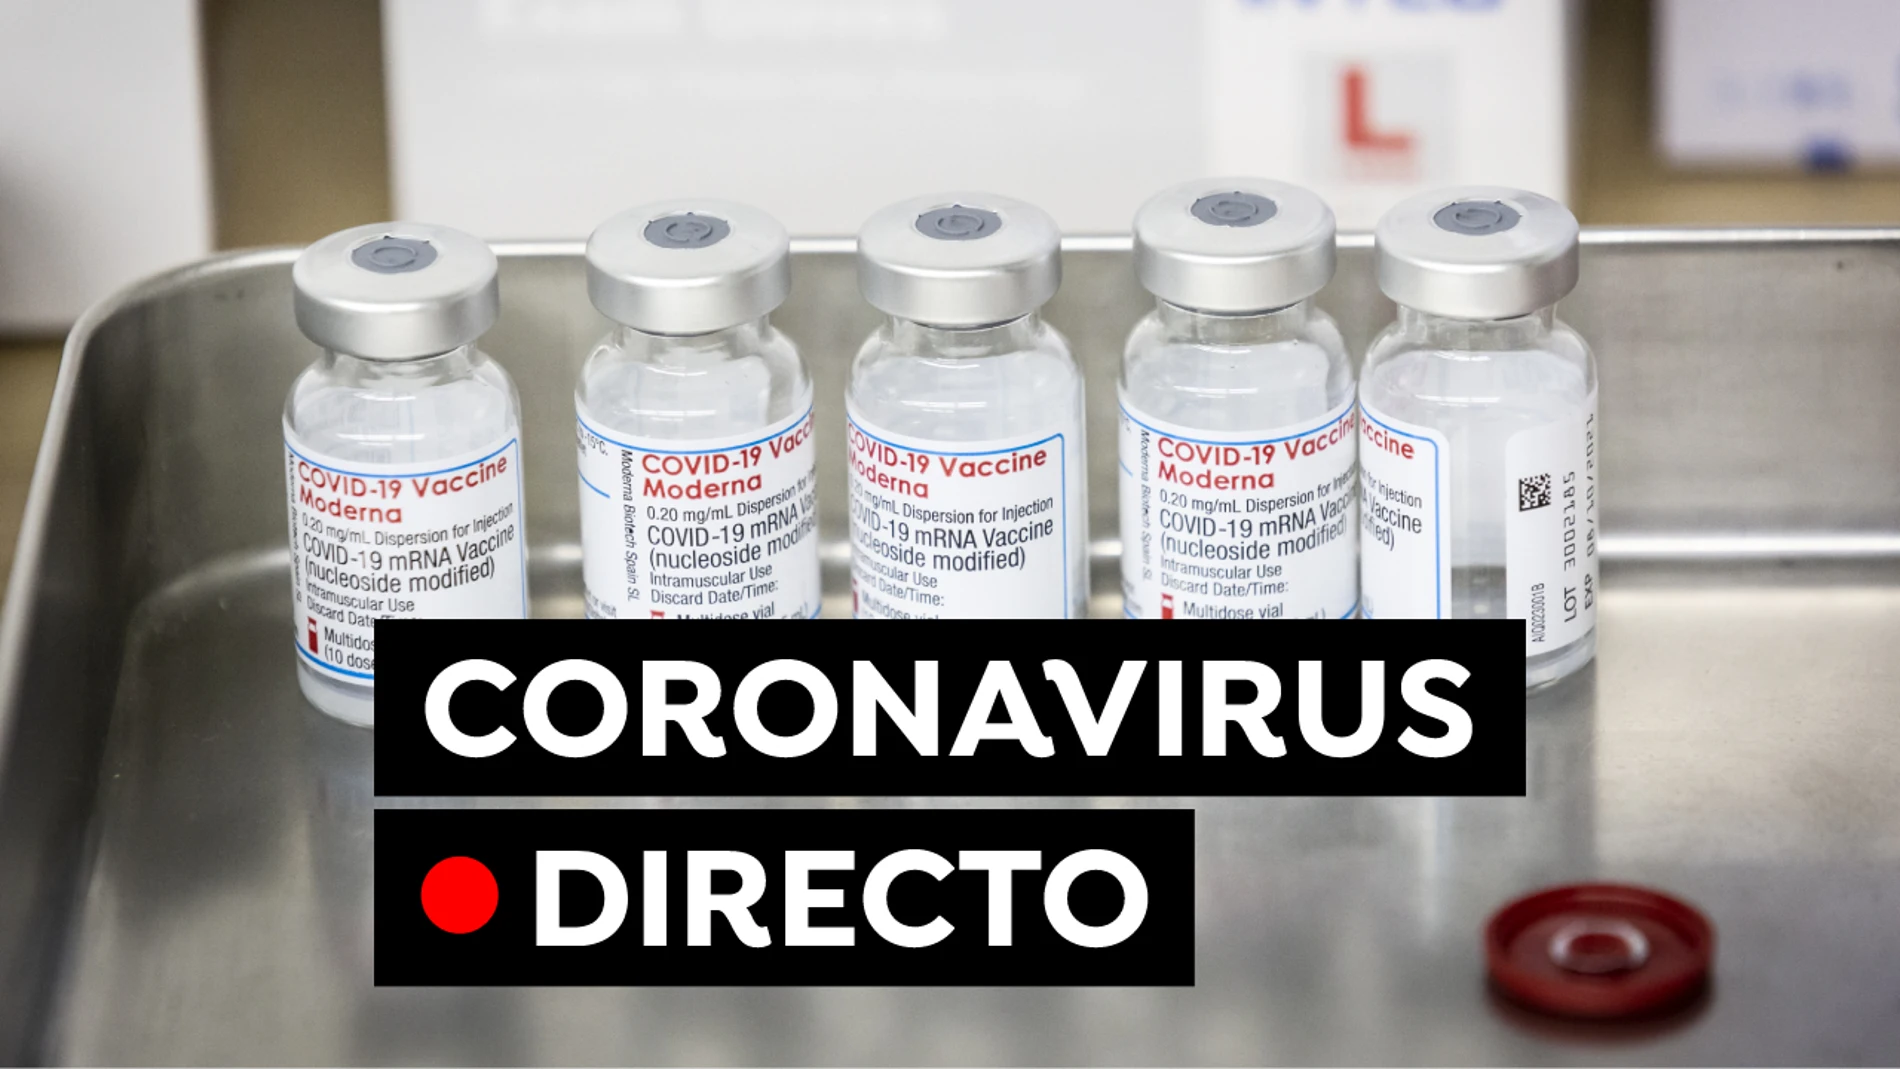 Uso de la mascarilla, cita para la vacuna y última hora del coronavirus en España hoy, en directo